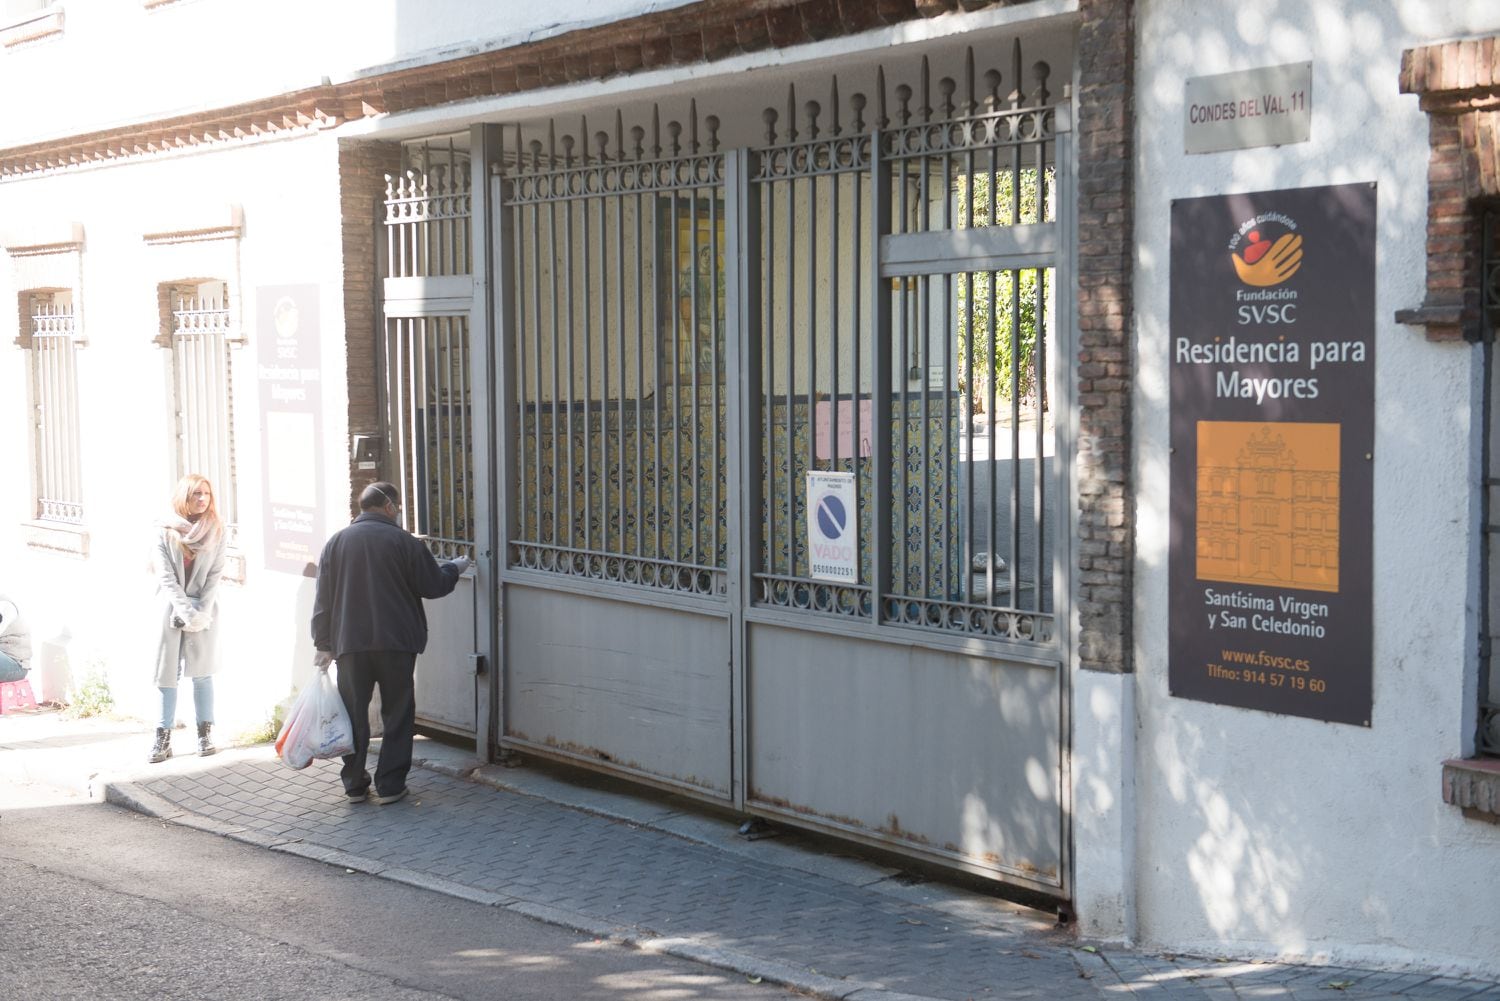 Porta de entrada para a Residencia Santísima Virgen e San Celedonio, em Madri, onde 23 pessoas morreram com o Covid-19.